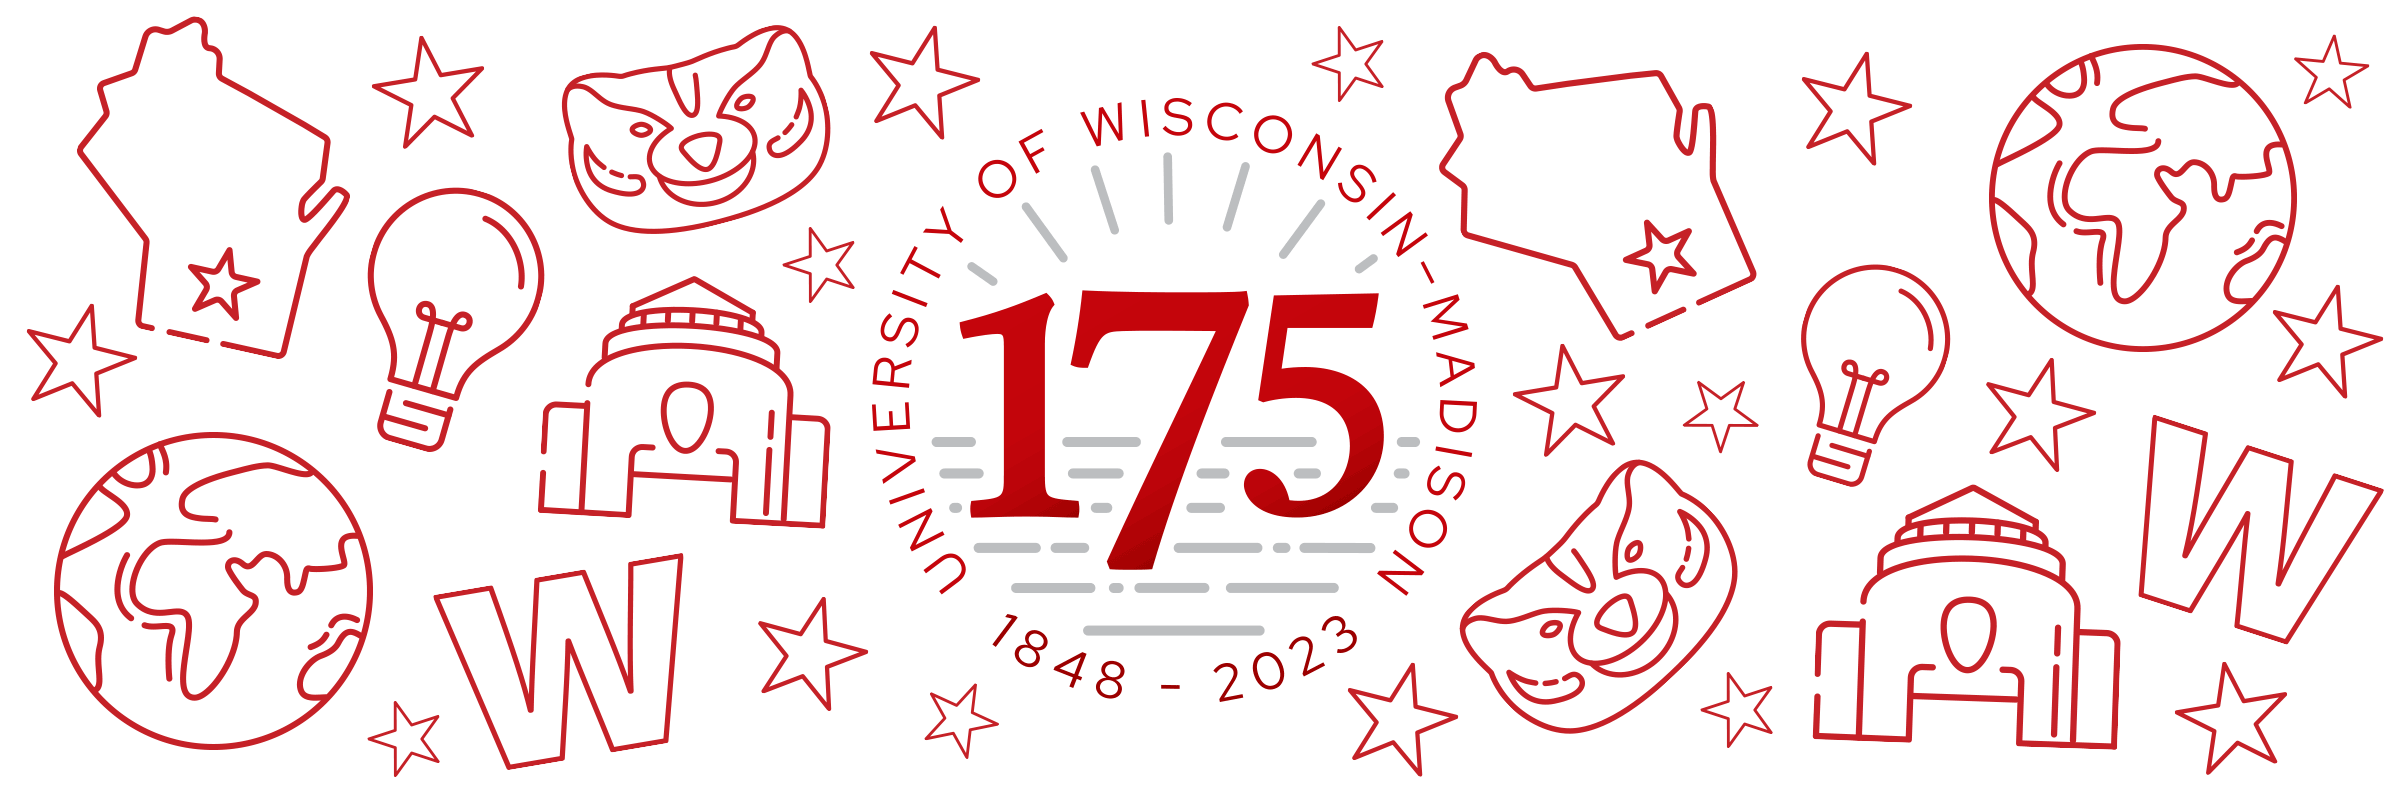 UW-Madison 175 logo.